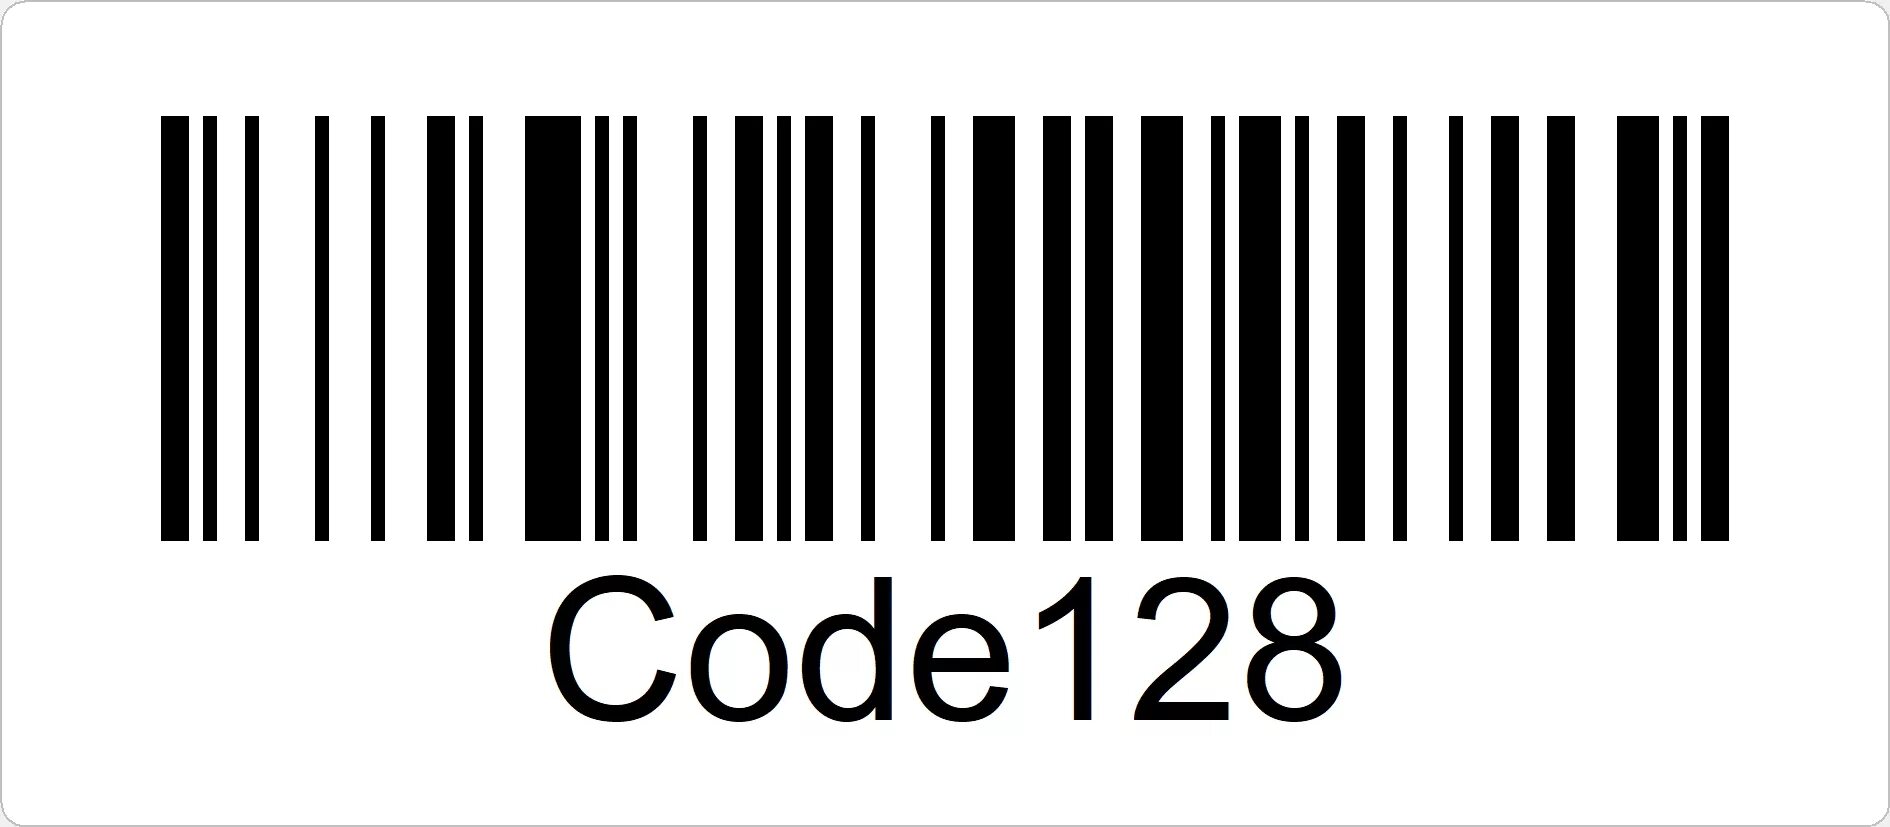 Навести штрих код. Штриховой код code128. Штрих код Barcode 128. EAN-13 code-128 штрих коды. Code 128 расшифровка.